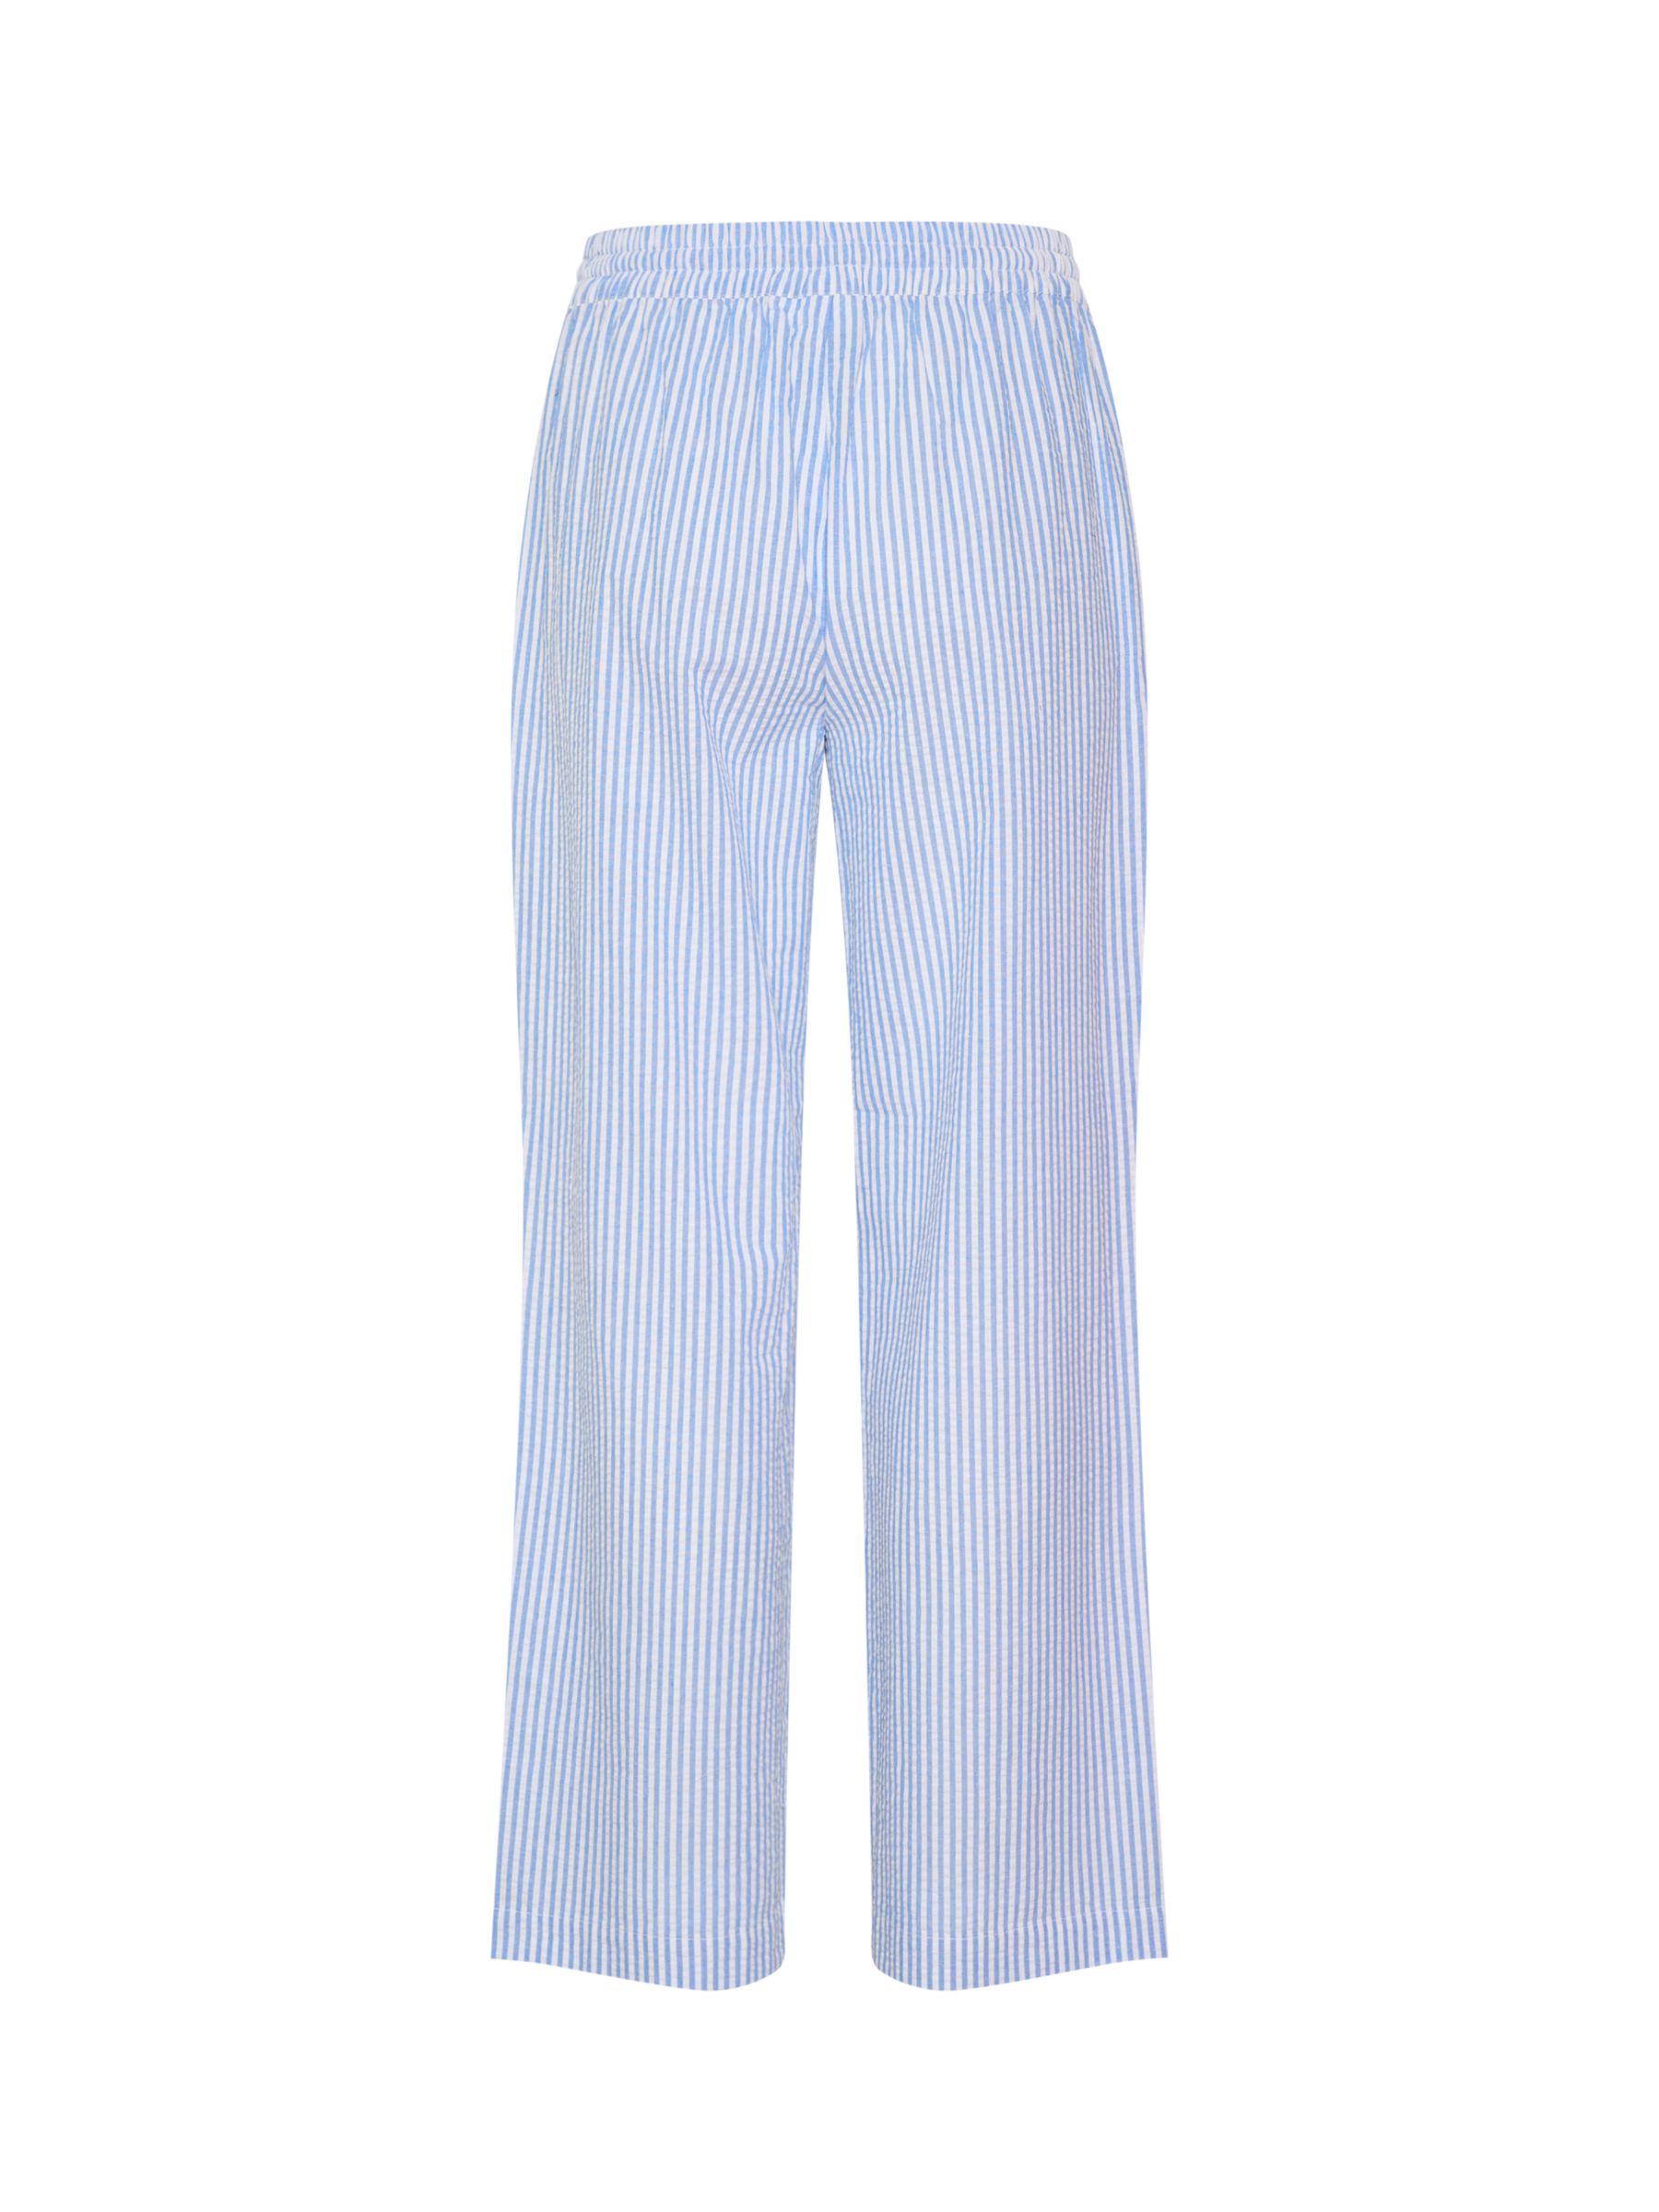 Buy Saint Tropez Elmiko Elastic Waist Casual Trousers, Palace Blue Online at johnlewis.com